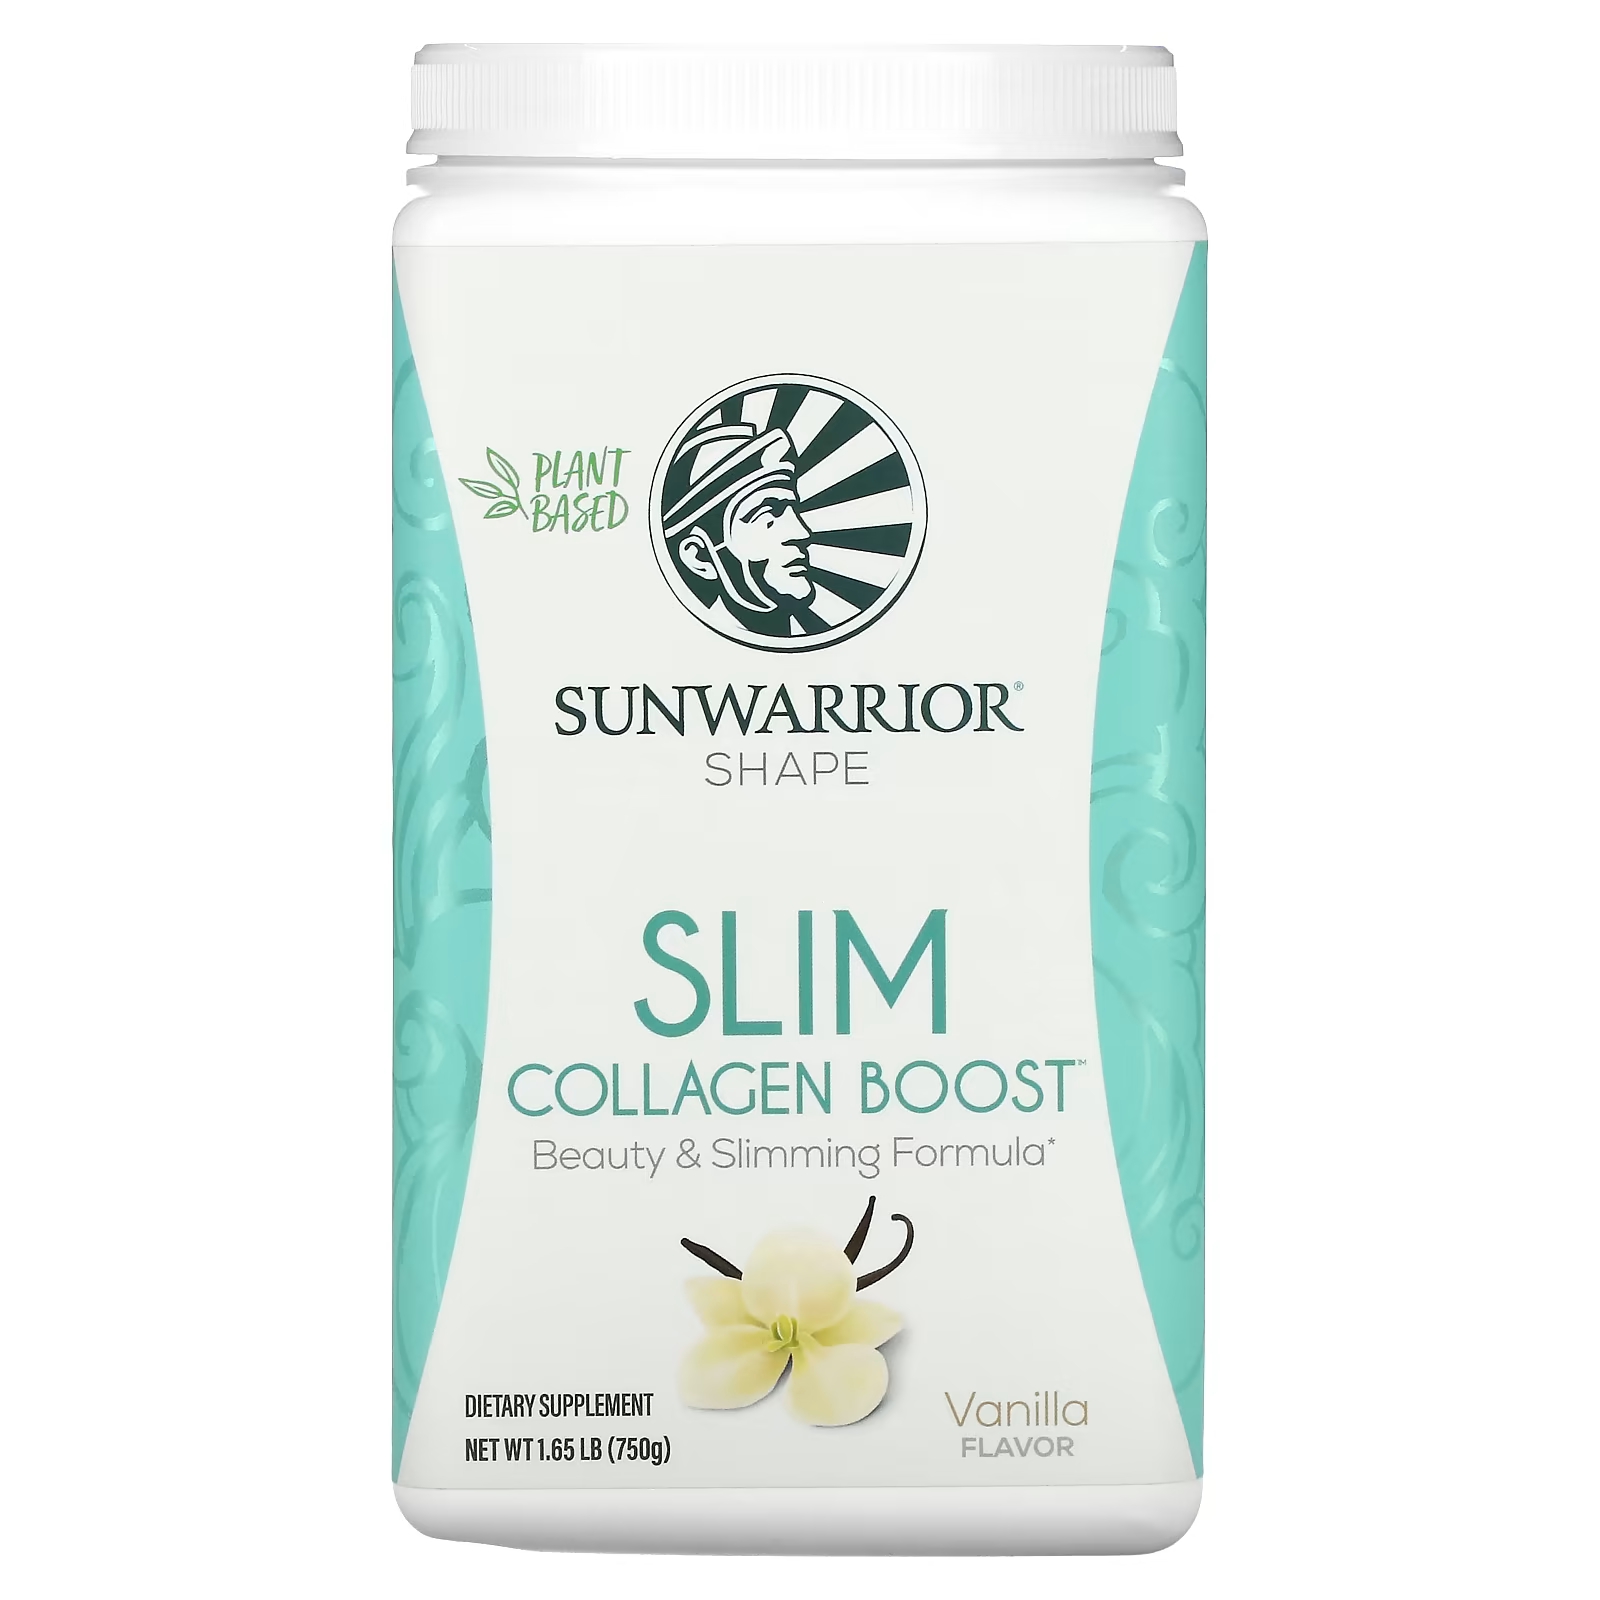 Пищевая добавка Sunwarrior Shape Slim Collagen Boost ваниль, 750 г пищевая добавка sunwarrior shape slim collagen boost ваниль 750 г